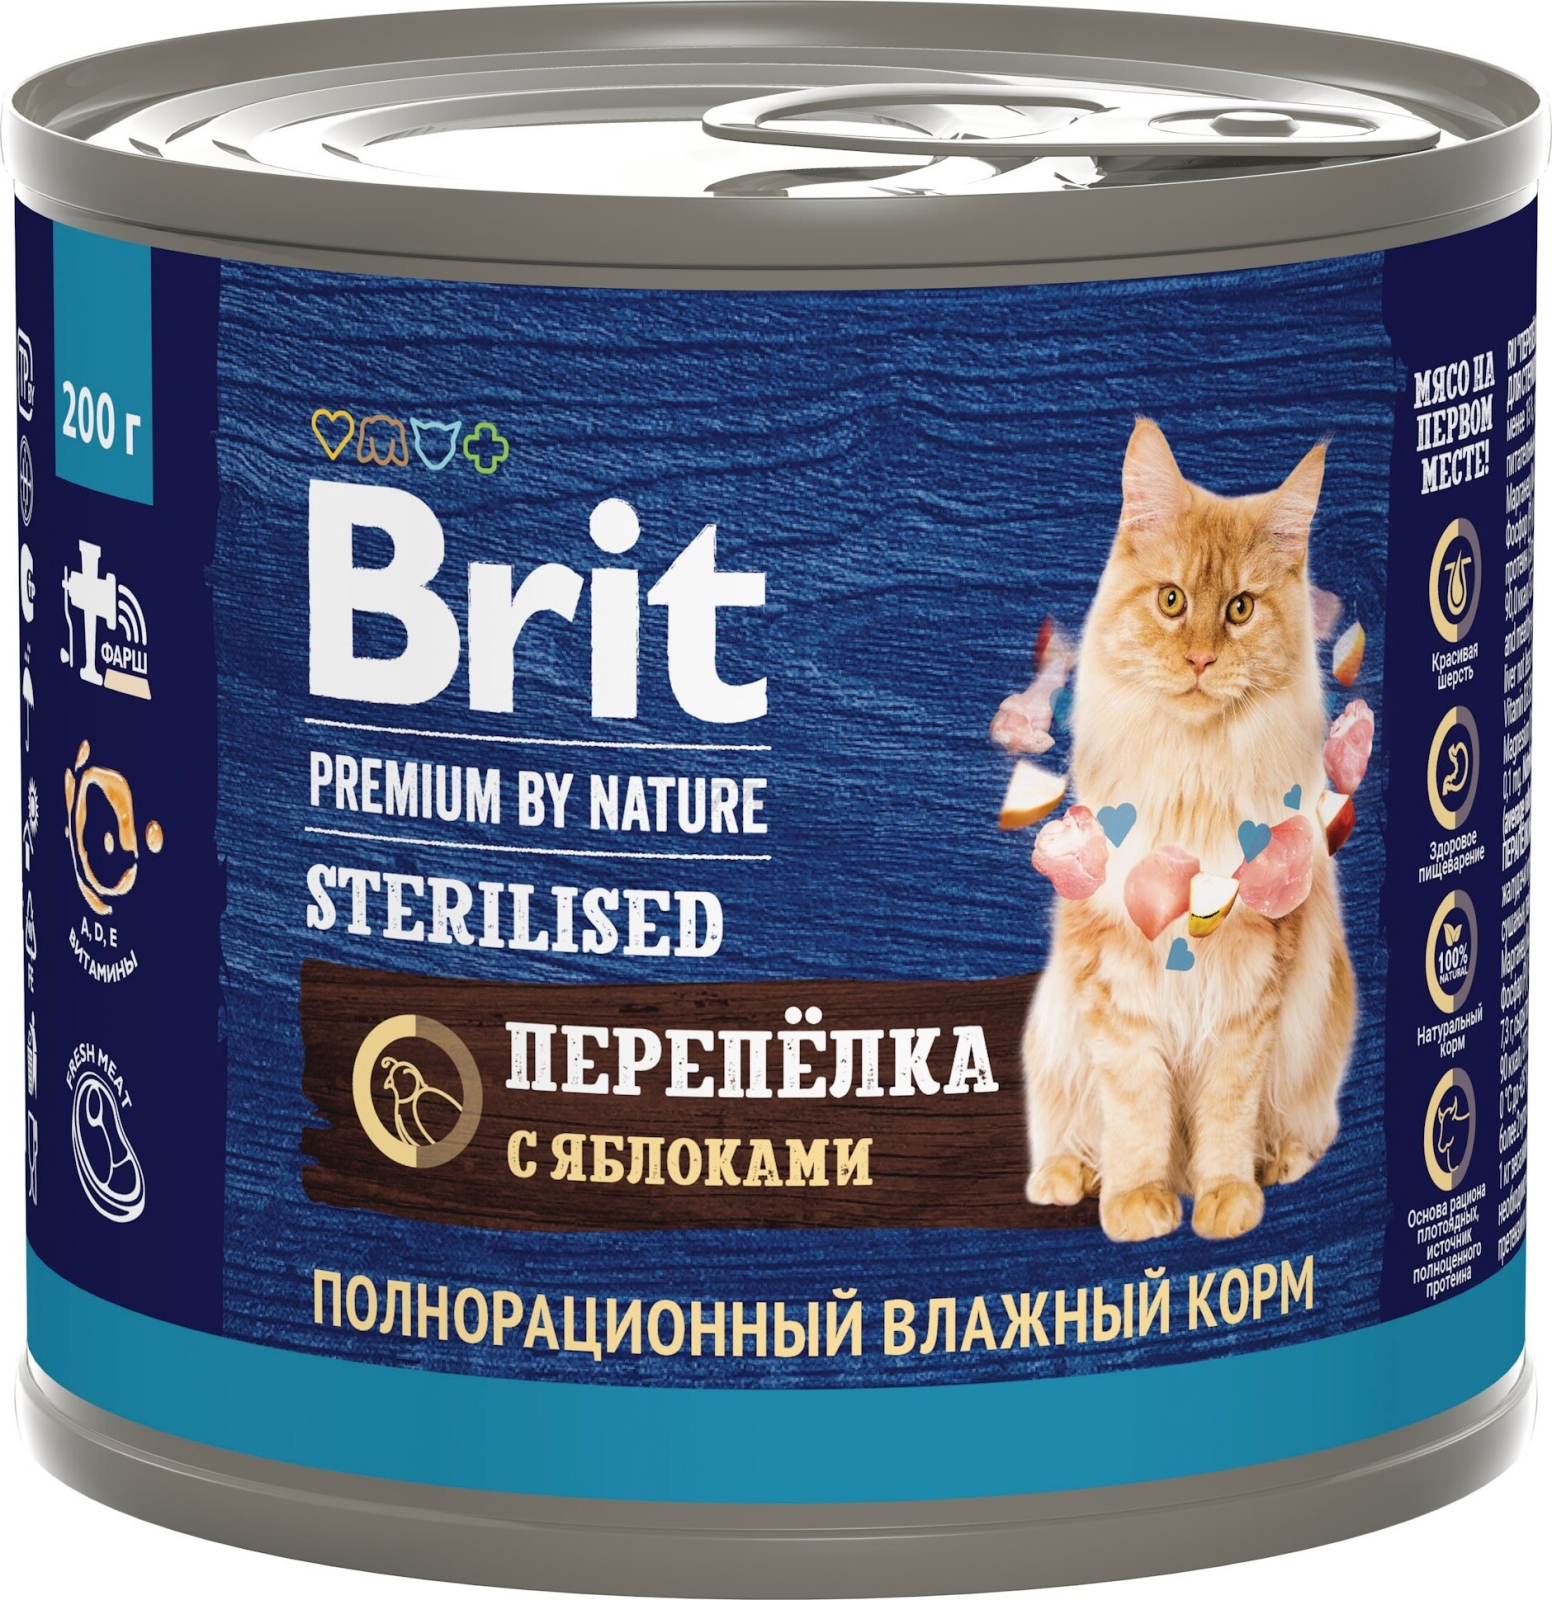 Влажный корм для стерилизованных кошек BRIT Premium by Nature Sterilised перепелка с яблоками консервы 200 г (5051335)